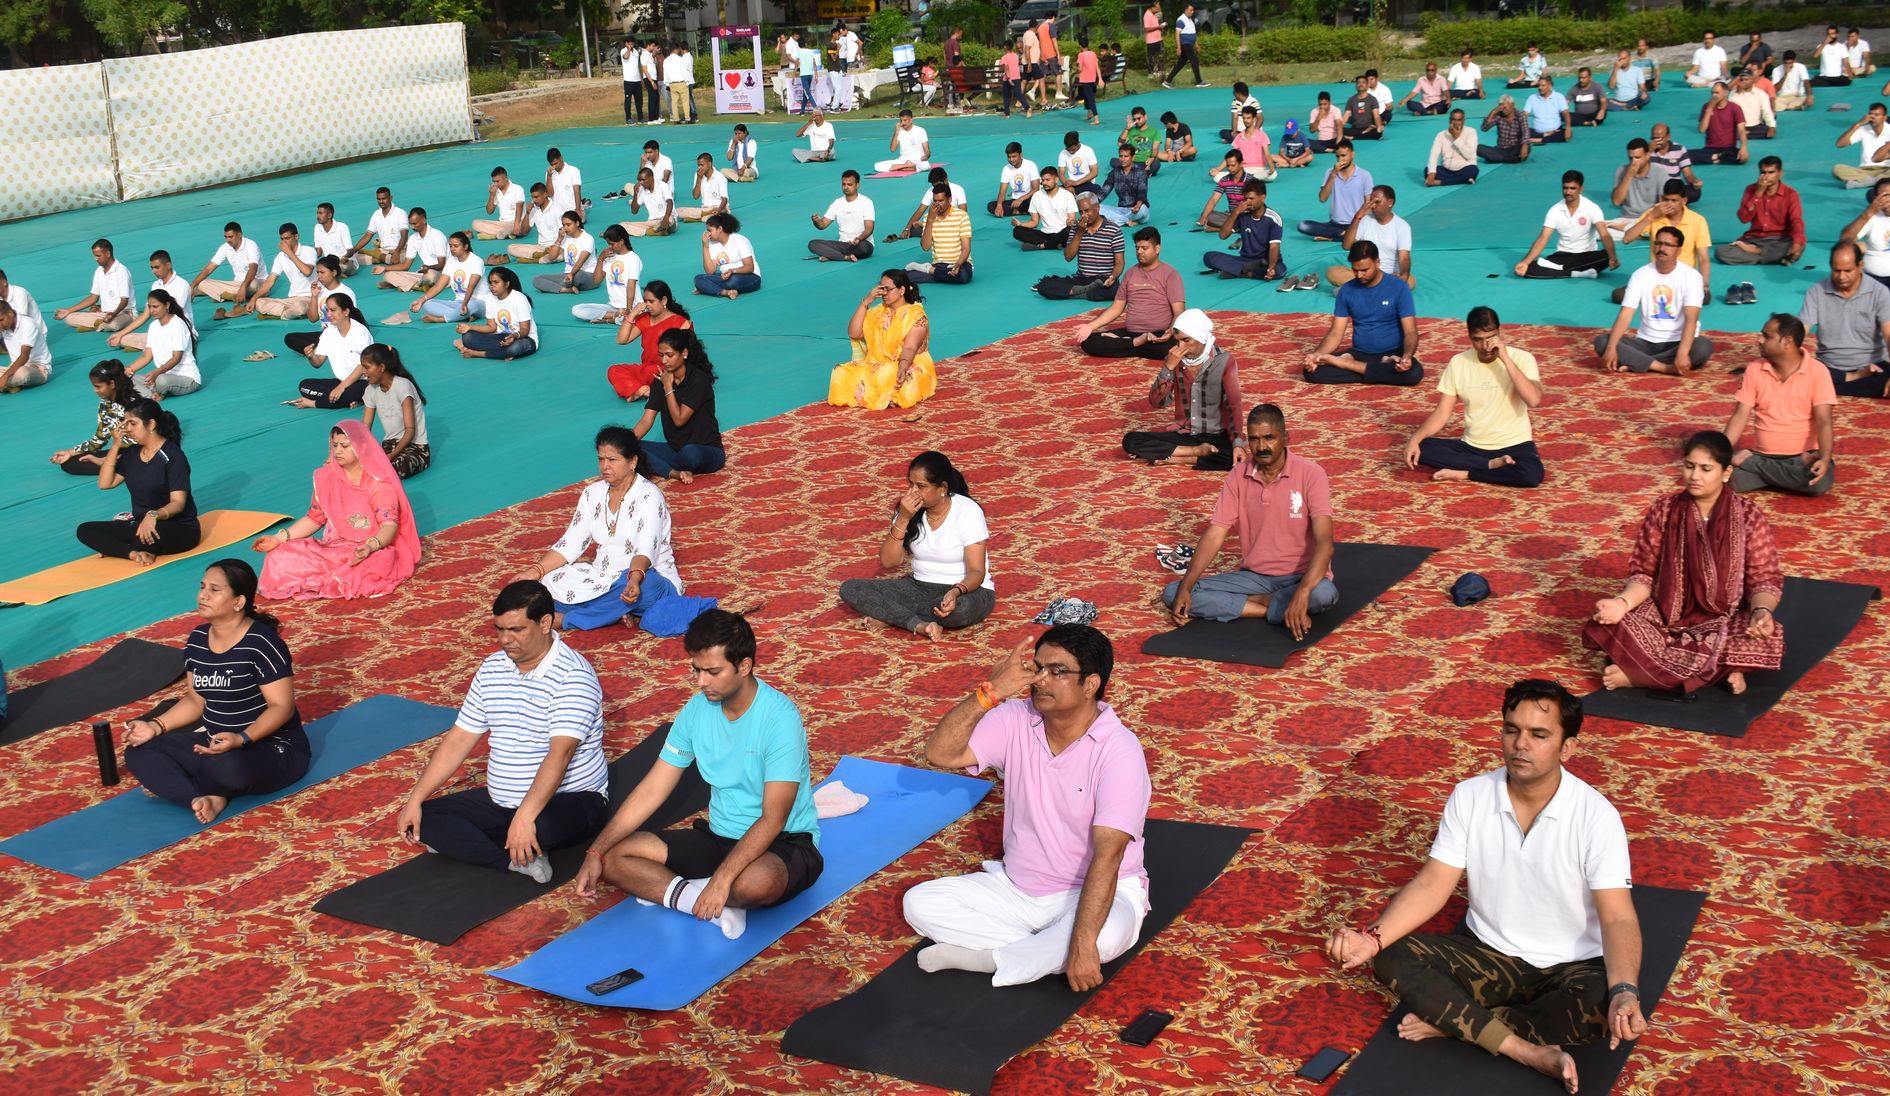 International Yoga Day 2022 : जिले के 236 स्थानों पर 42 हजार से अधिक लोगों ने किया योग